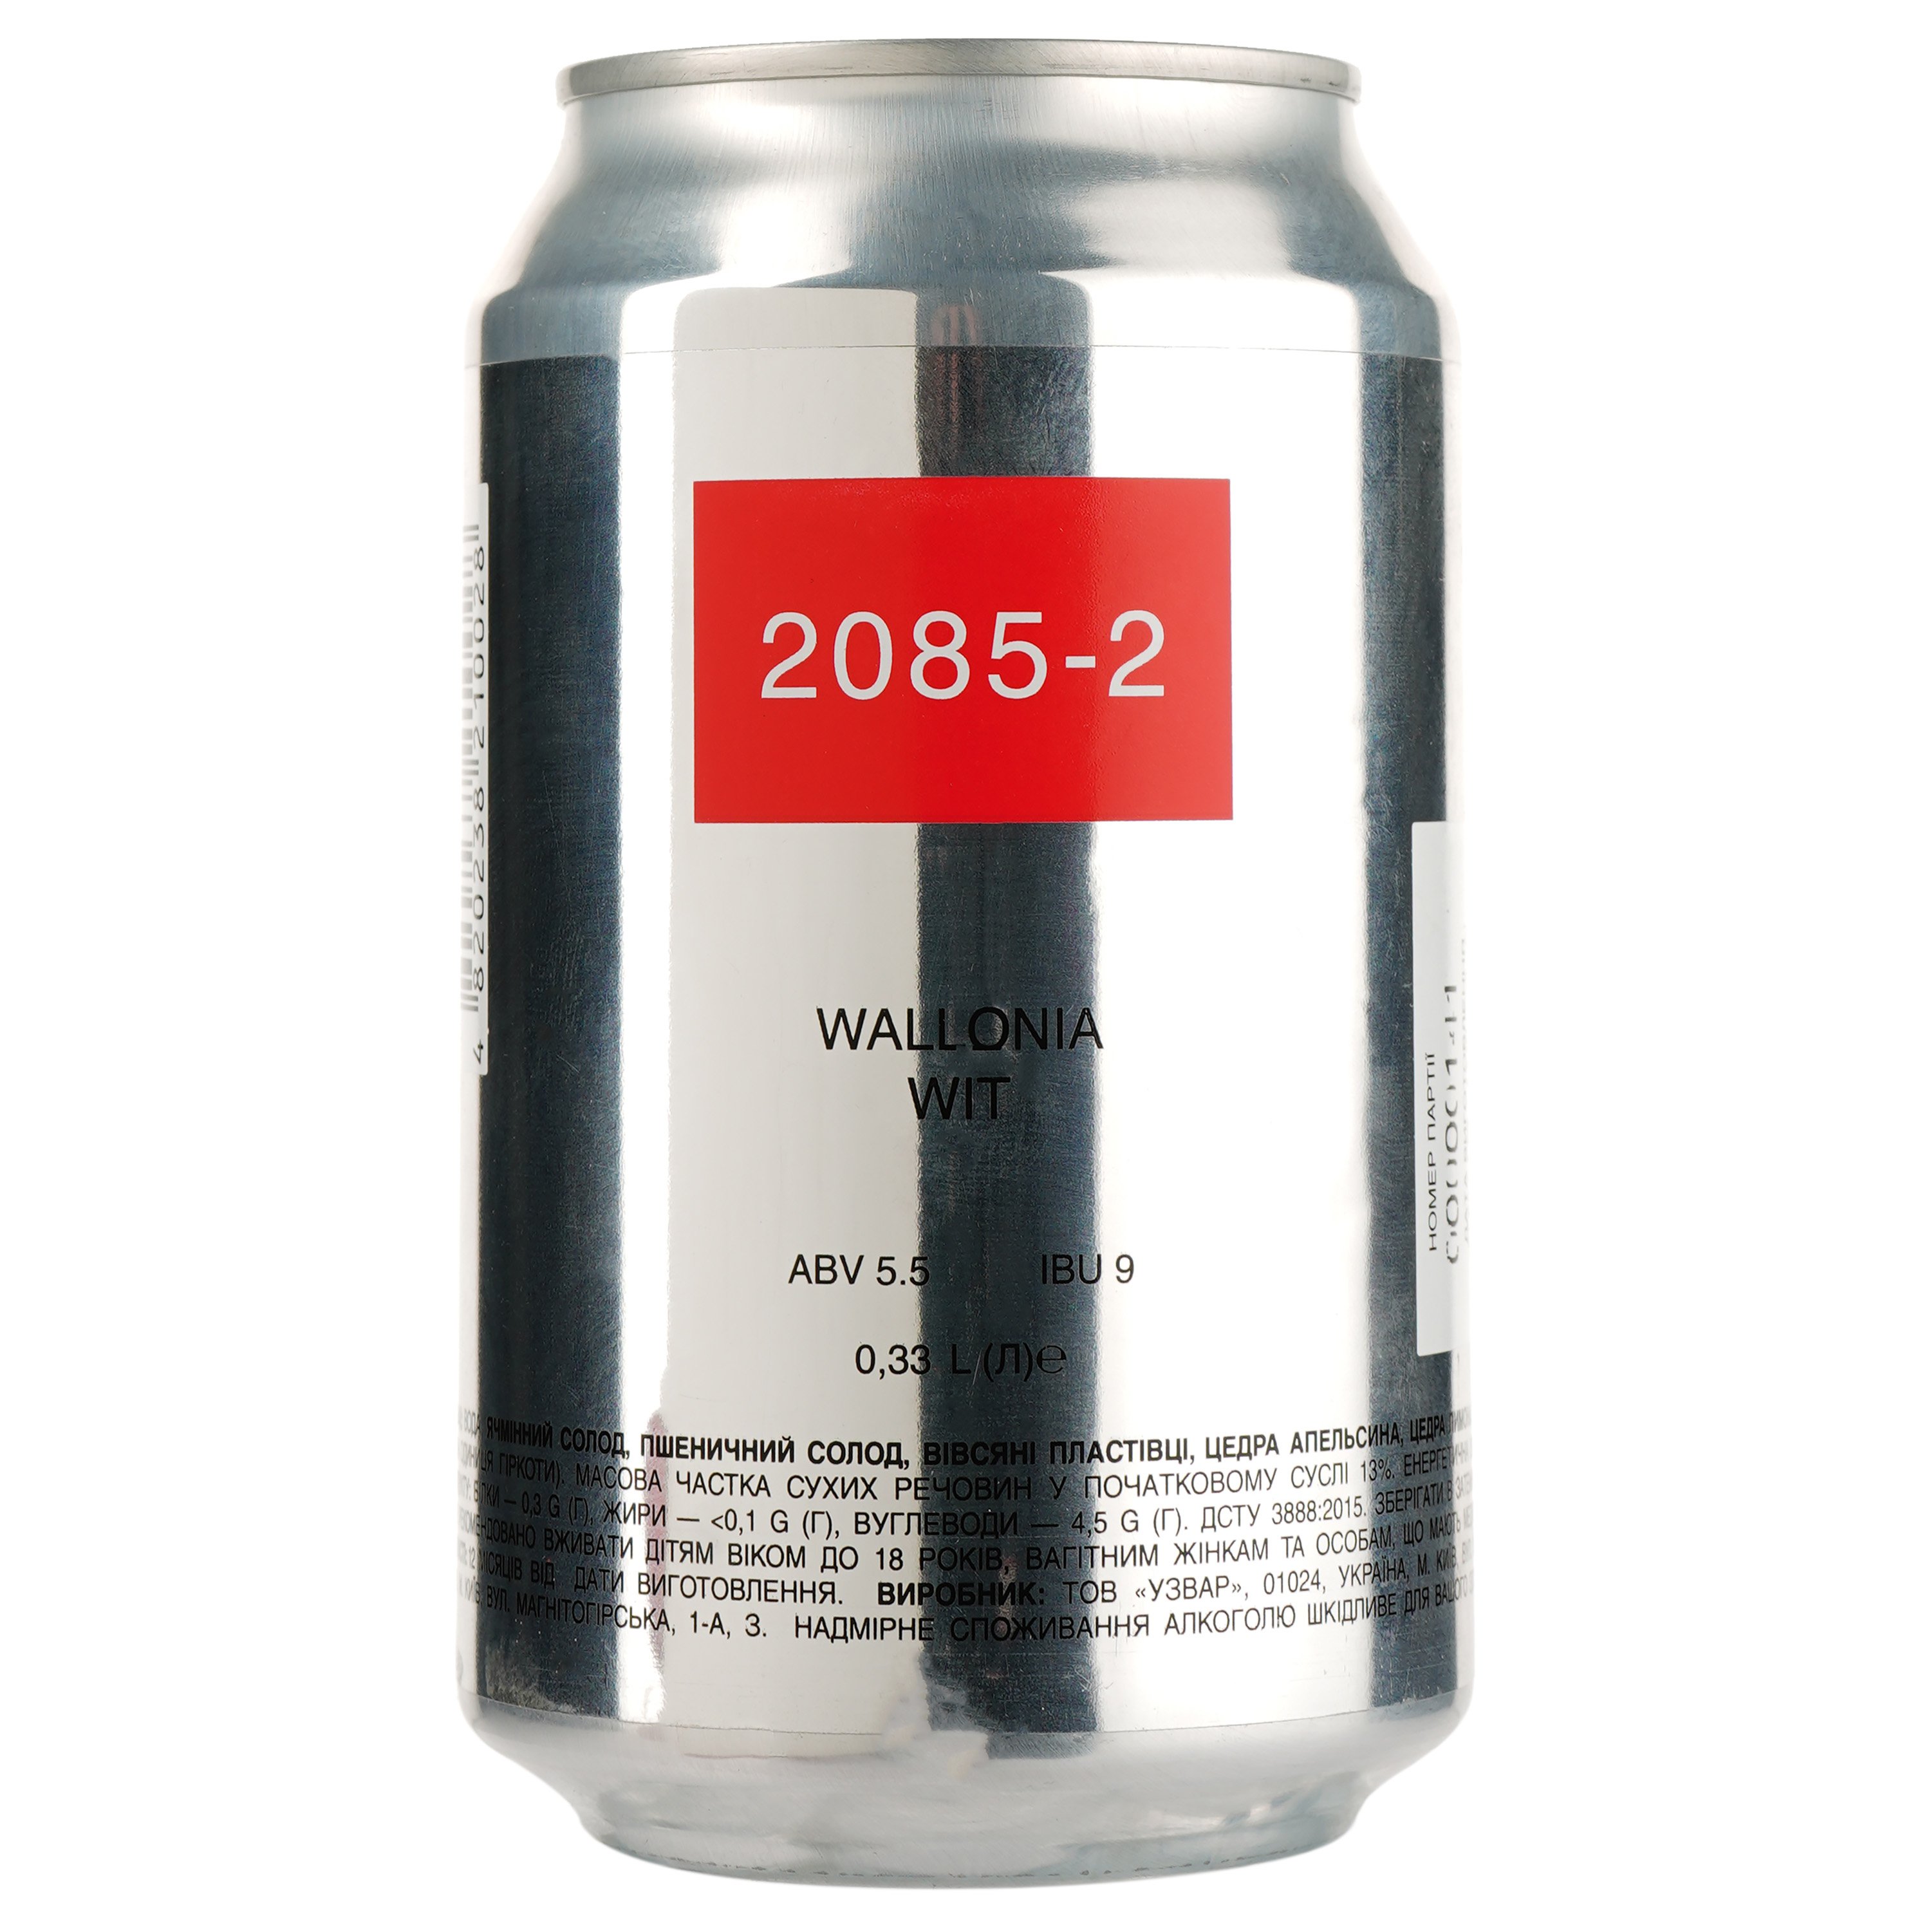 Пиво 2085-2 Wallonia Wit, світле, нефільтроване, 5,5%, з/б, 0,33 л (842348) - фото 1